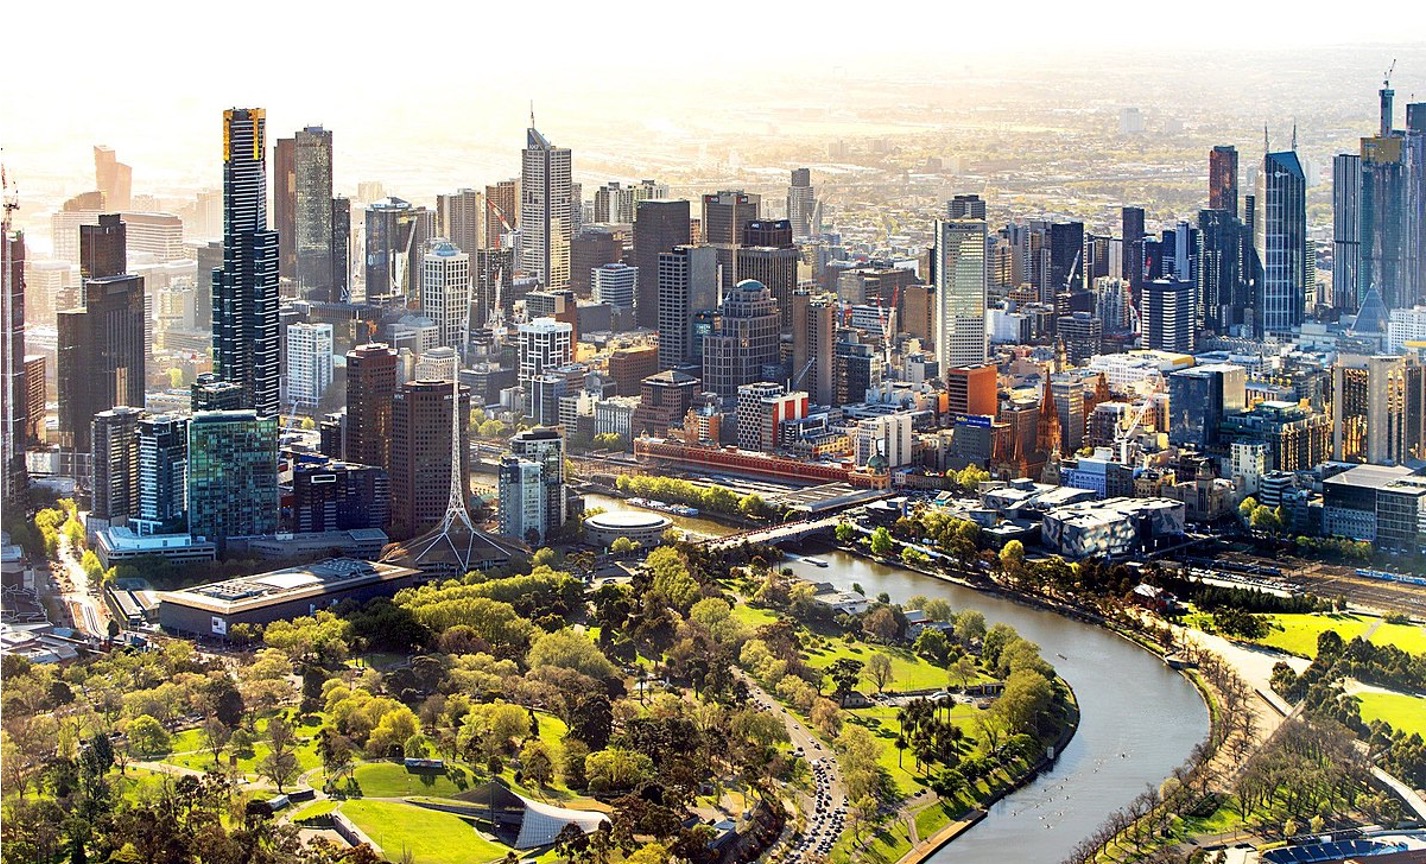 Melbourne named Worlds Most Liveable Dictatorship